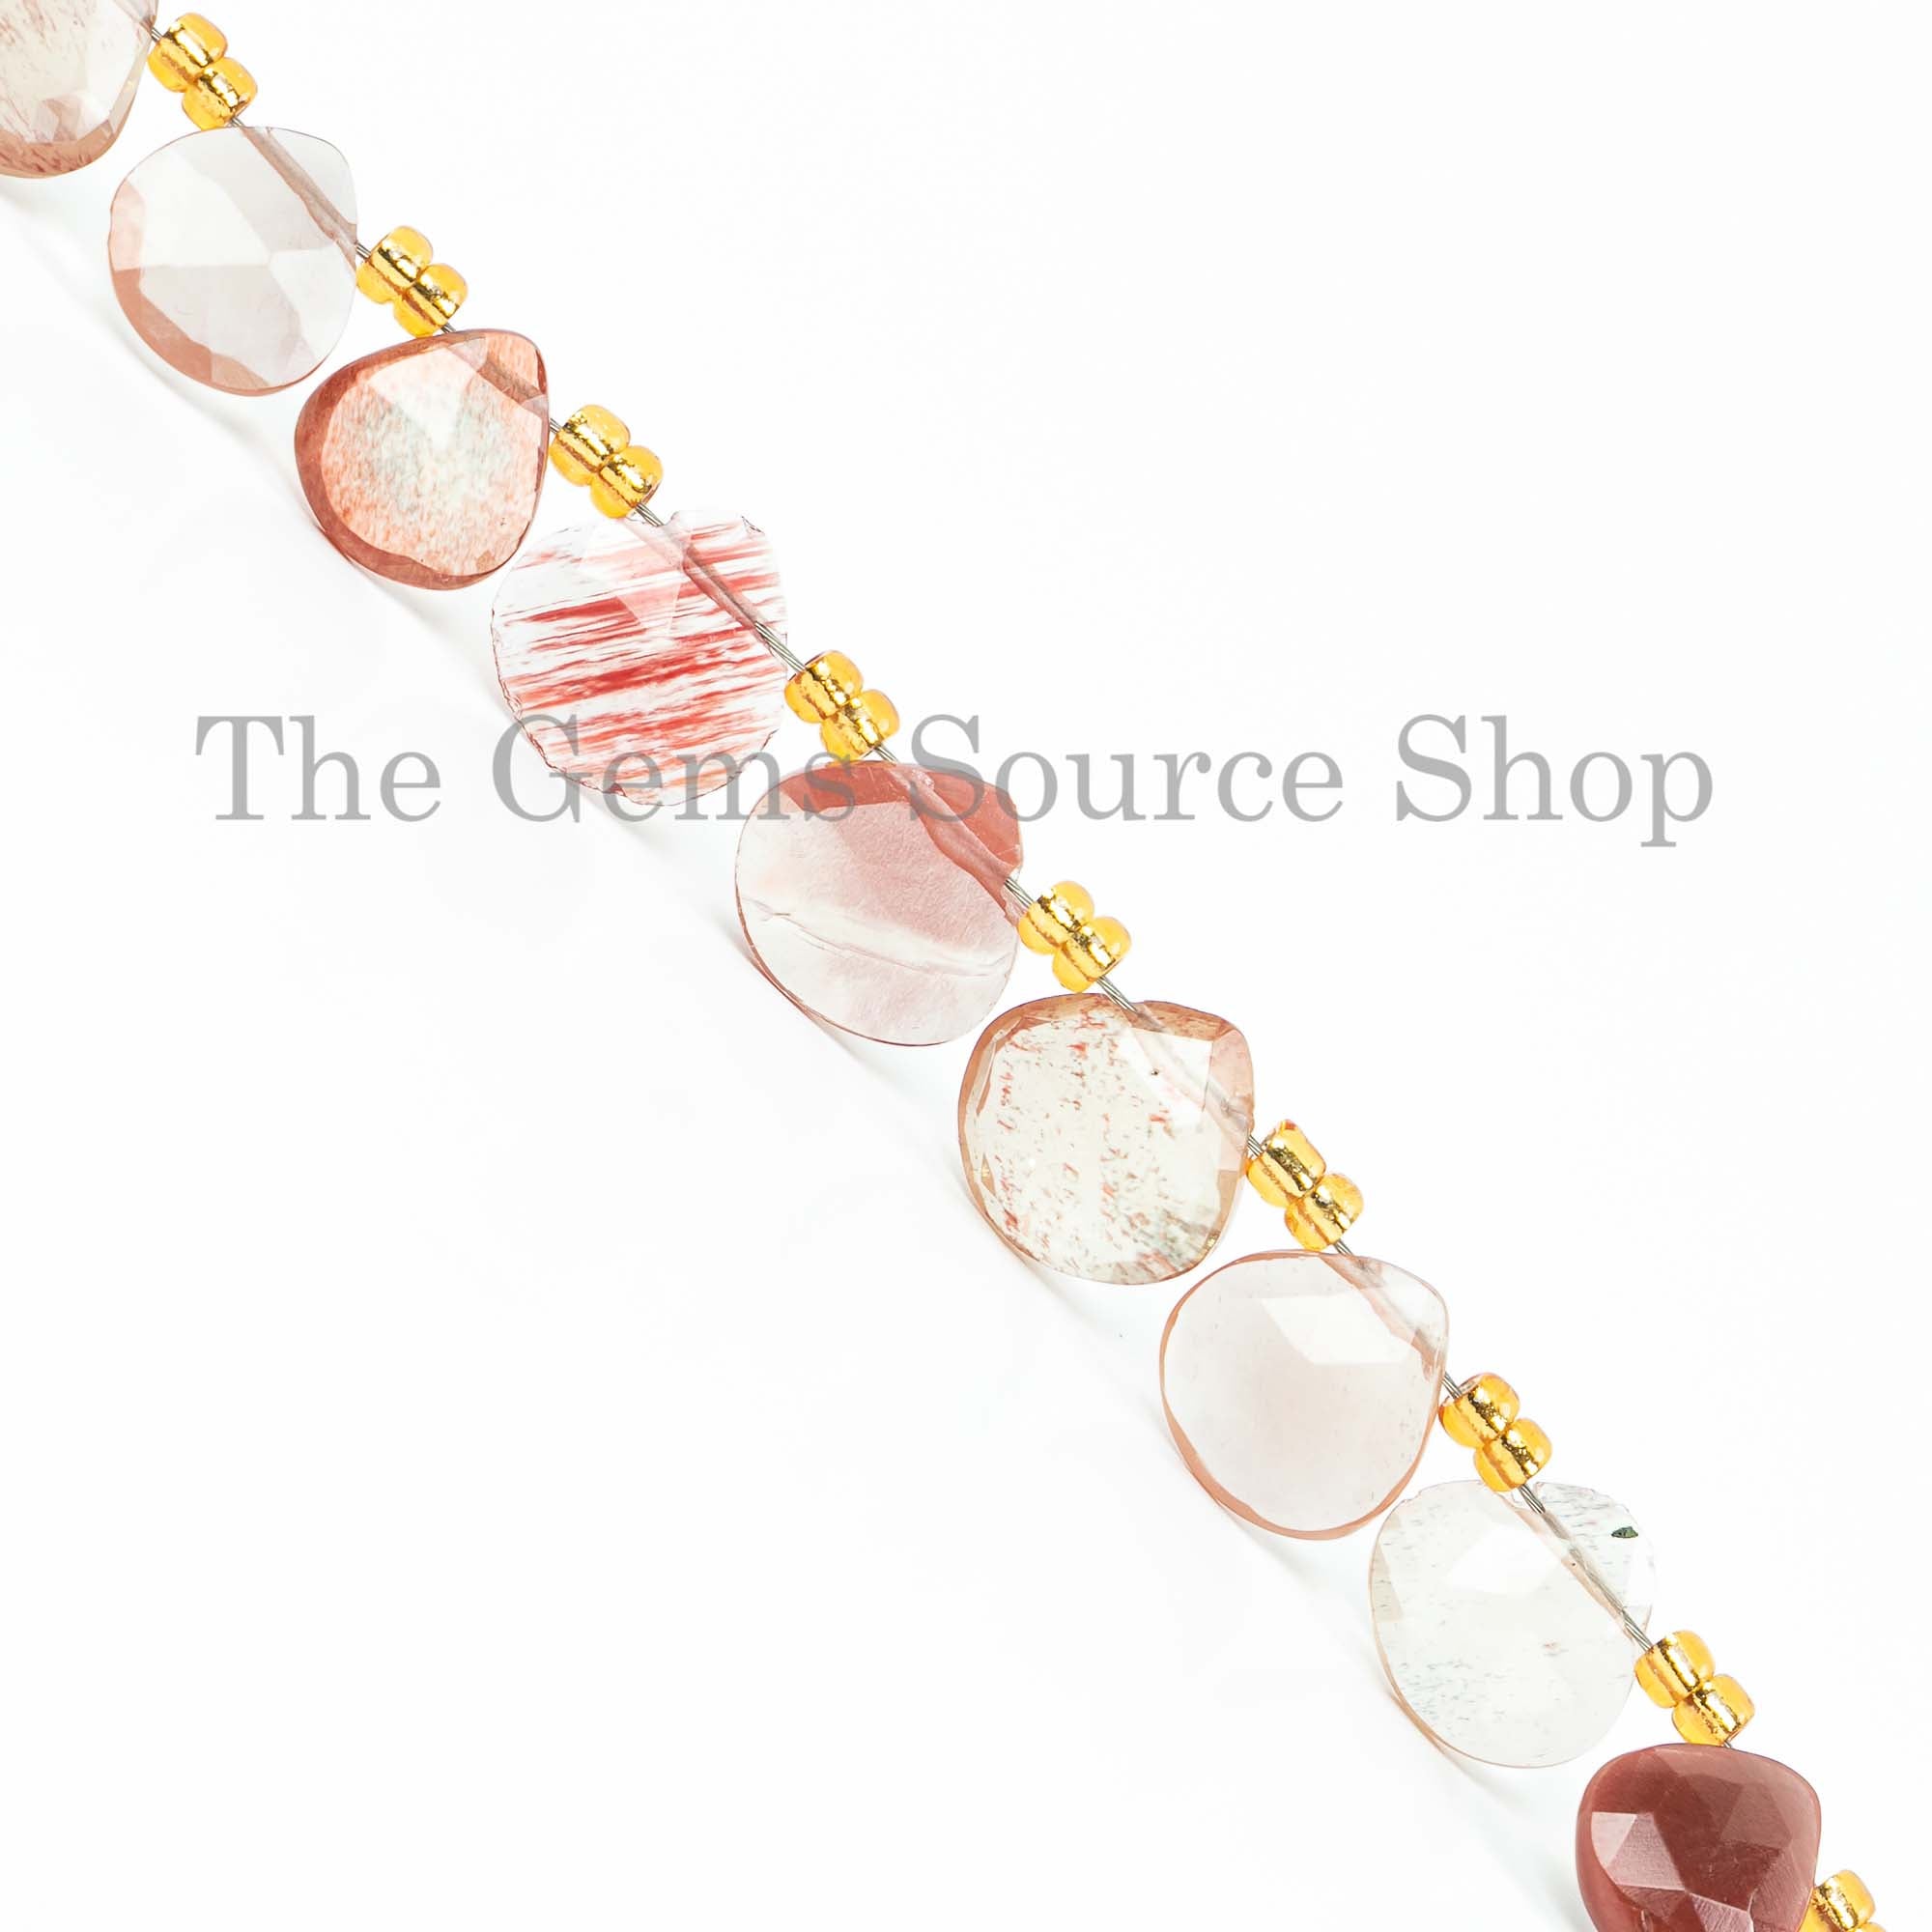 Andesine Labradorite Faceted Heart Briolette, Gemstone Heart Beads, Labradorite Beads